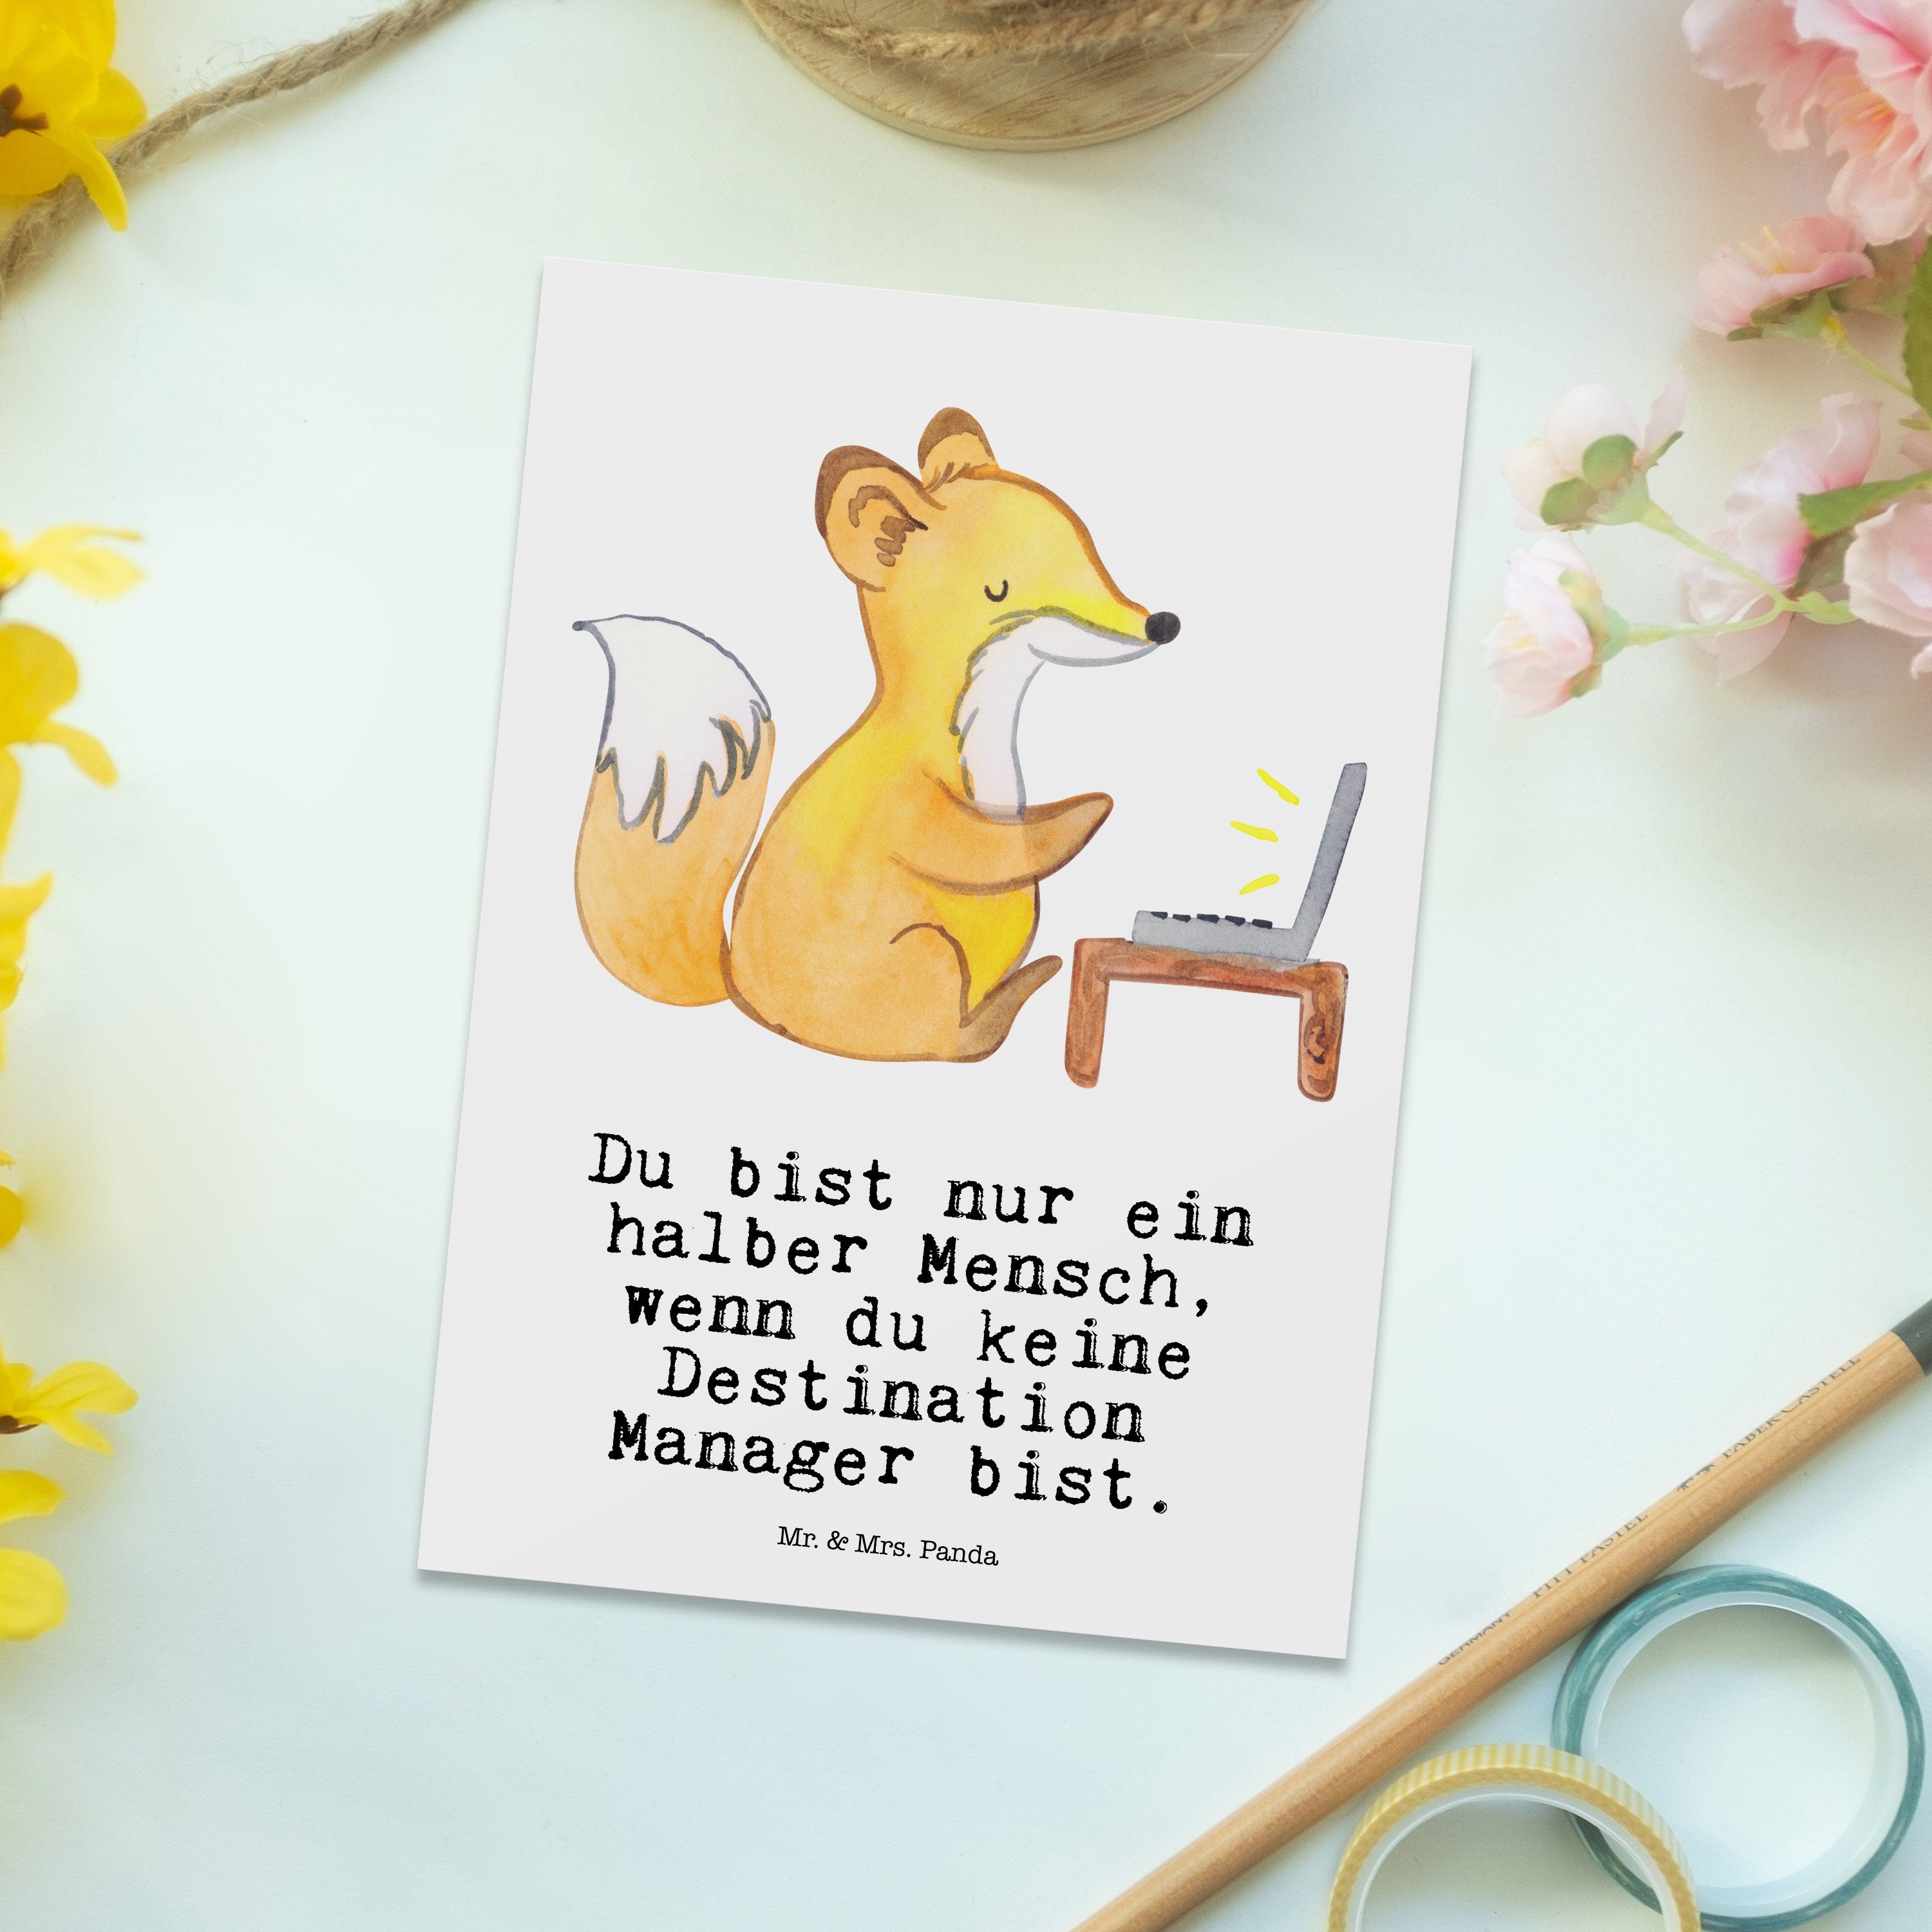 Mr. & Grußkarte, Geschenk, Manager Herz Destination Mrs. Panda - Weiß Abschied - Postkarte mit